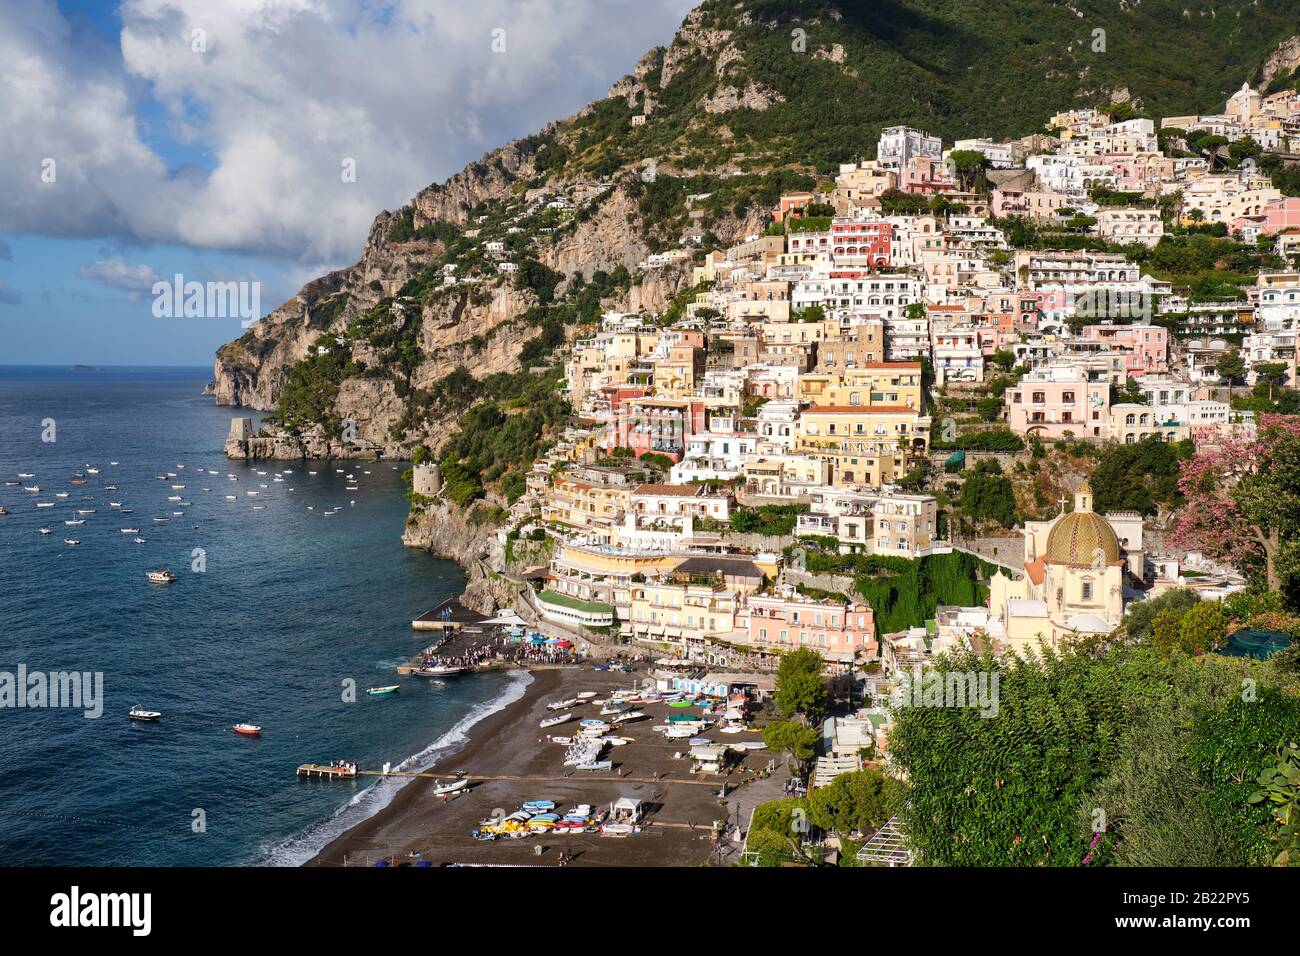 The famous tourist resort Positano on the italian Amalfi Coast Stock Photo